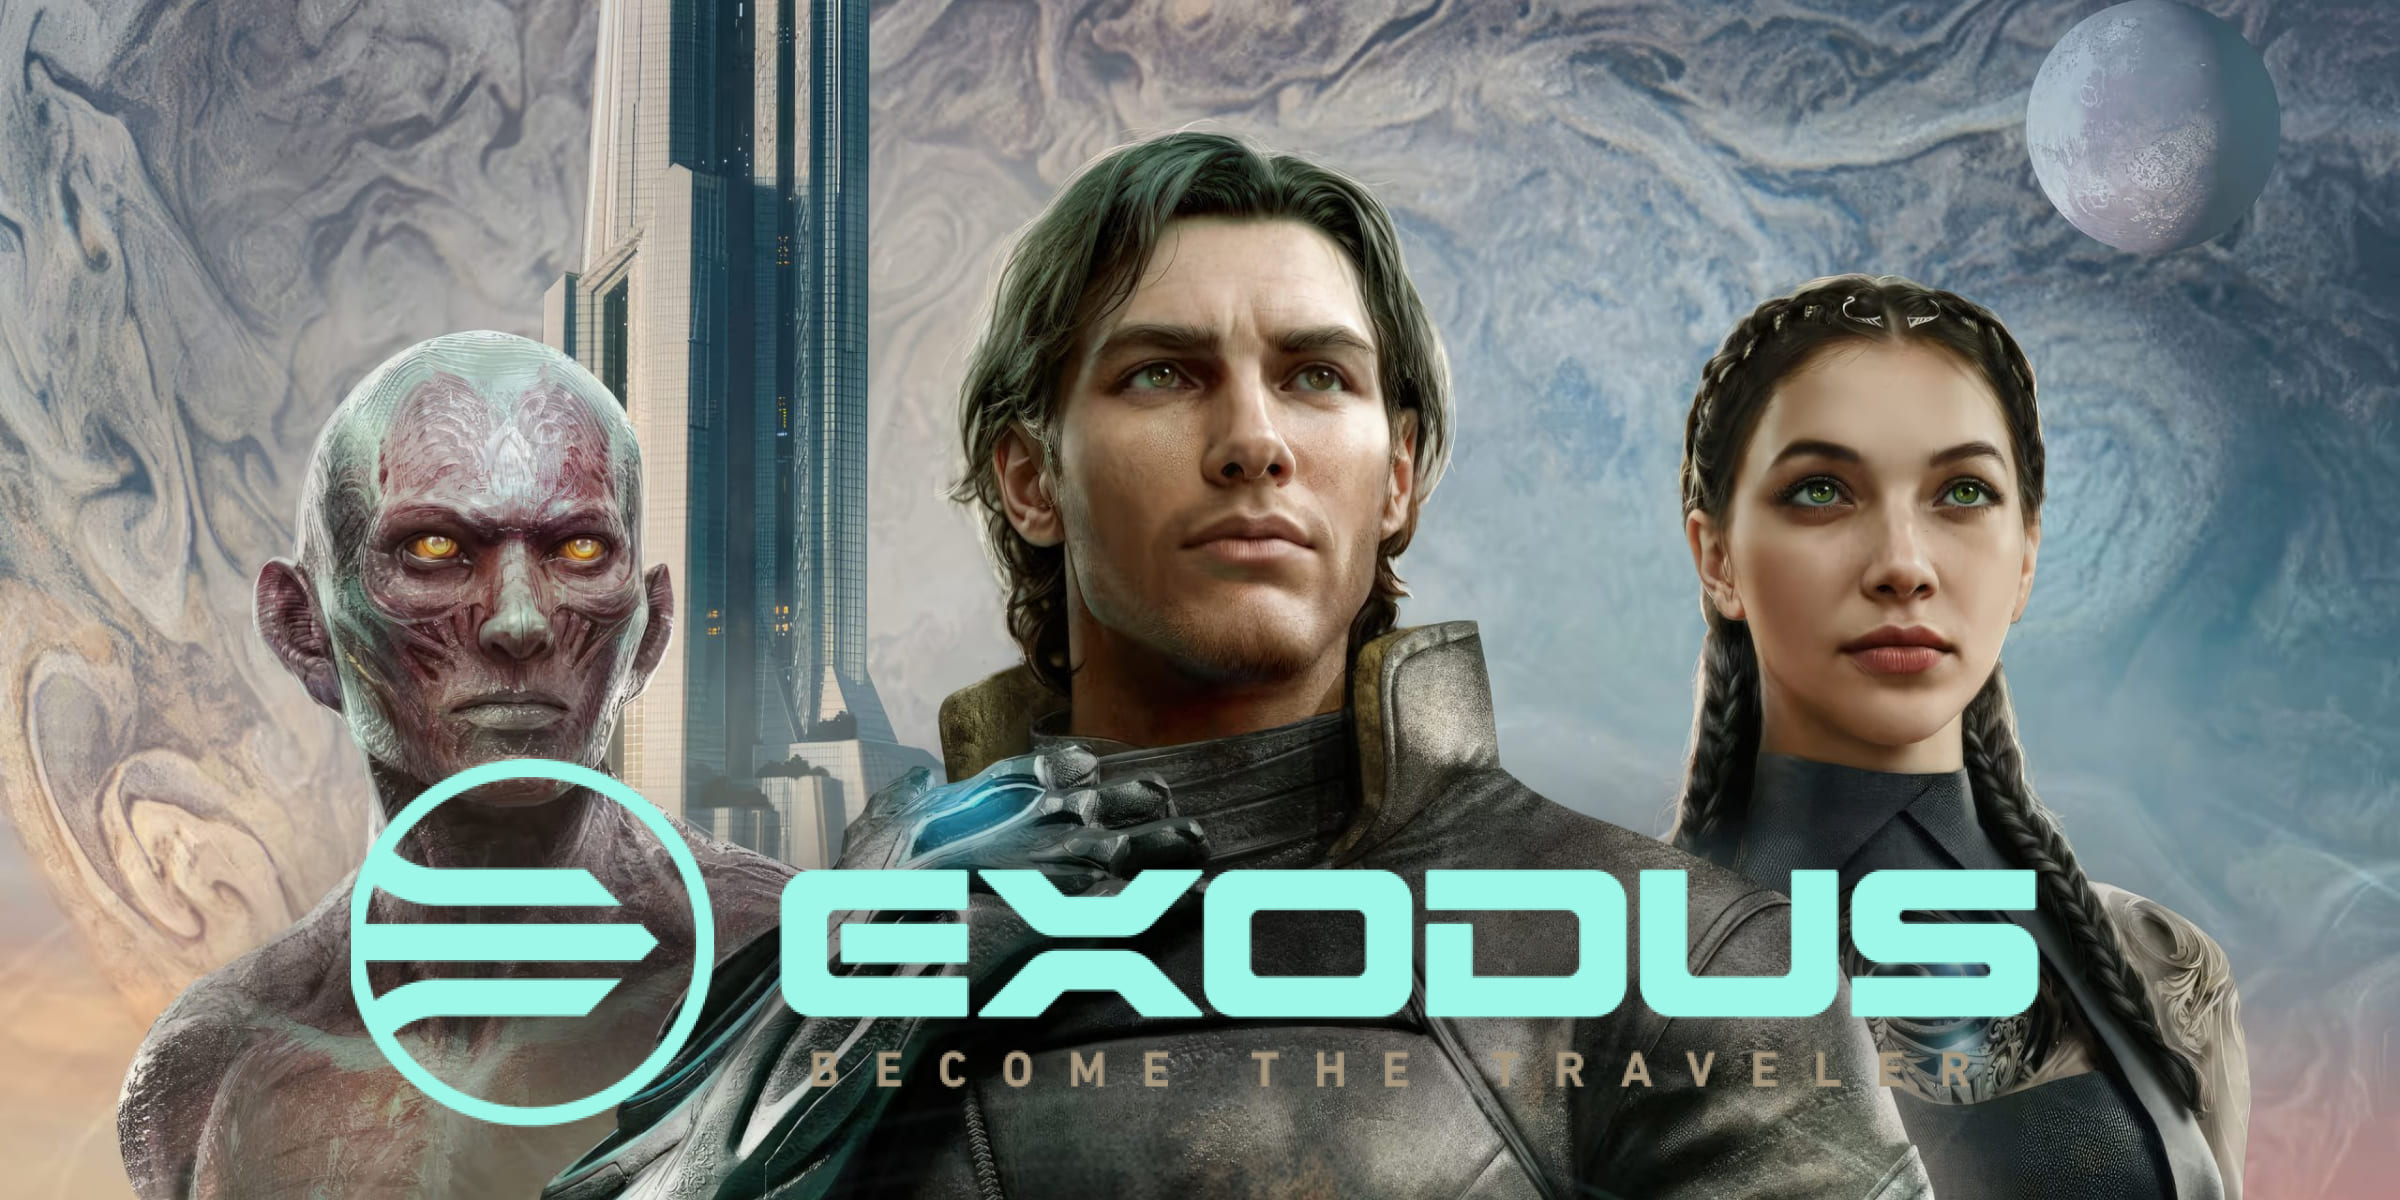 Отправляйтесь в эпическое космическое путешествие с Exodus: научно-фантастической ролевой игрой от разработчиков Mass Effect